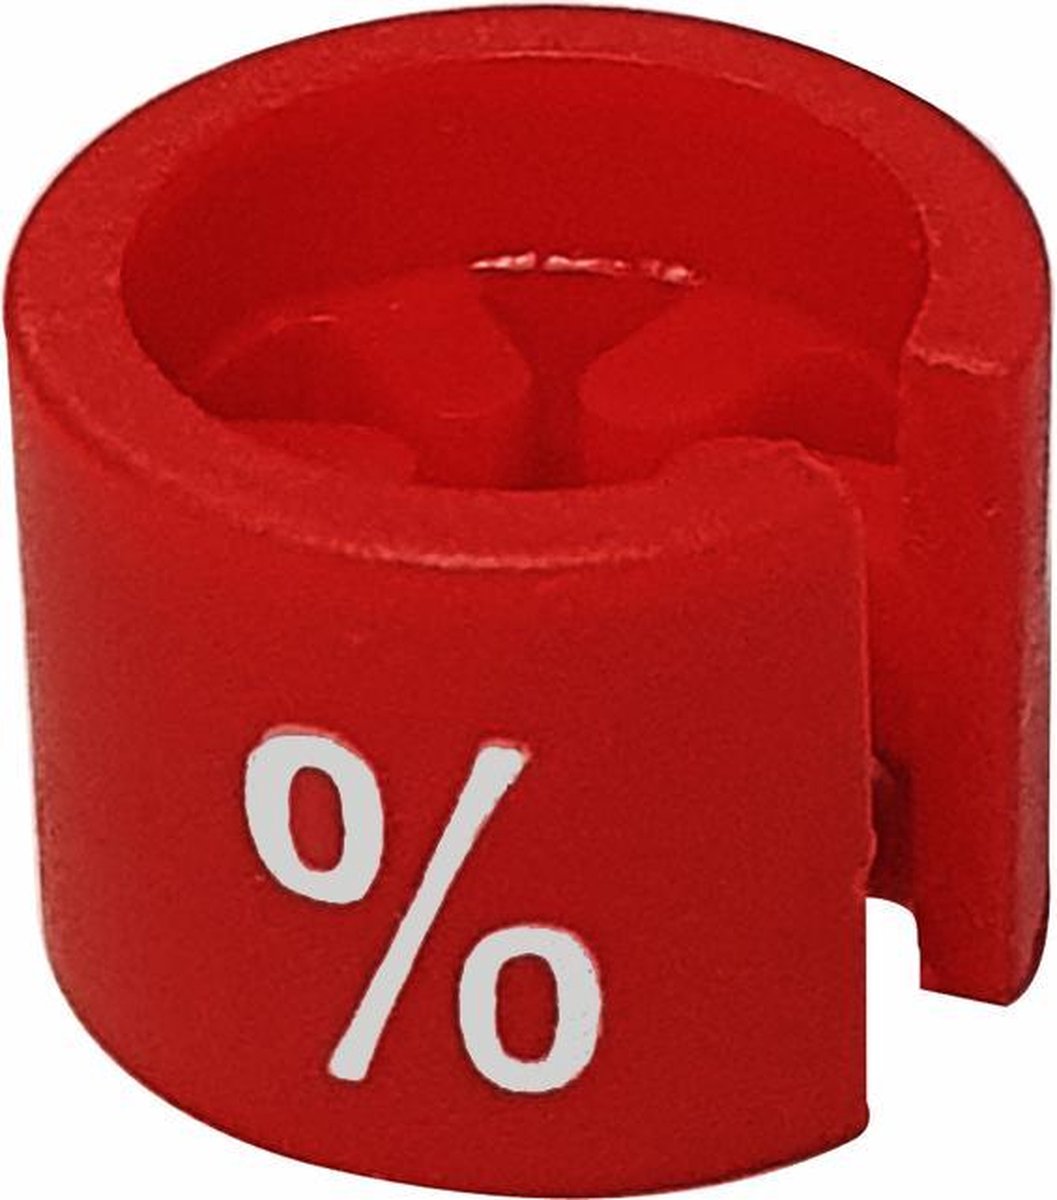 Maatdop / maataanduiding voor kledinghanger / kapstok rood met de opdruk % (per 100 stuks)